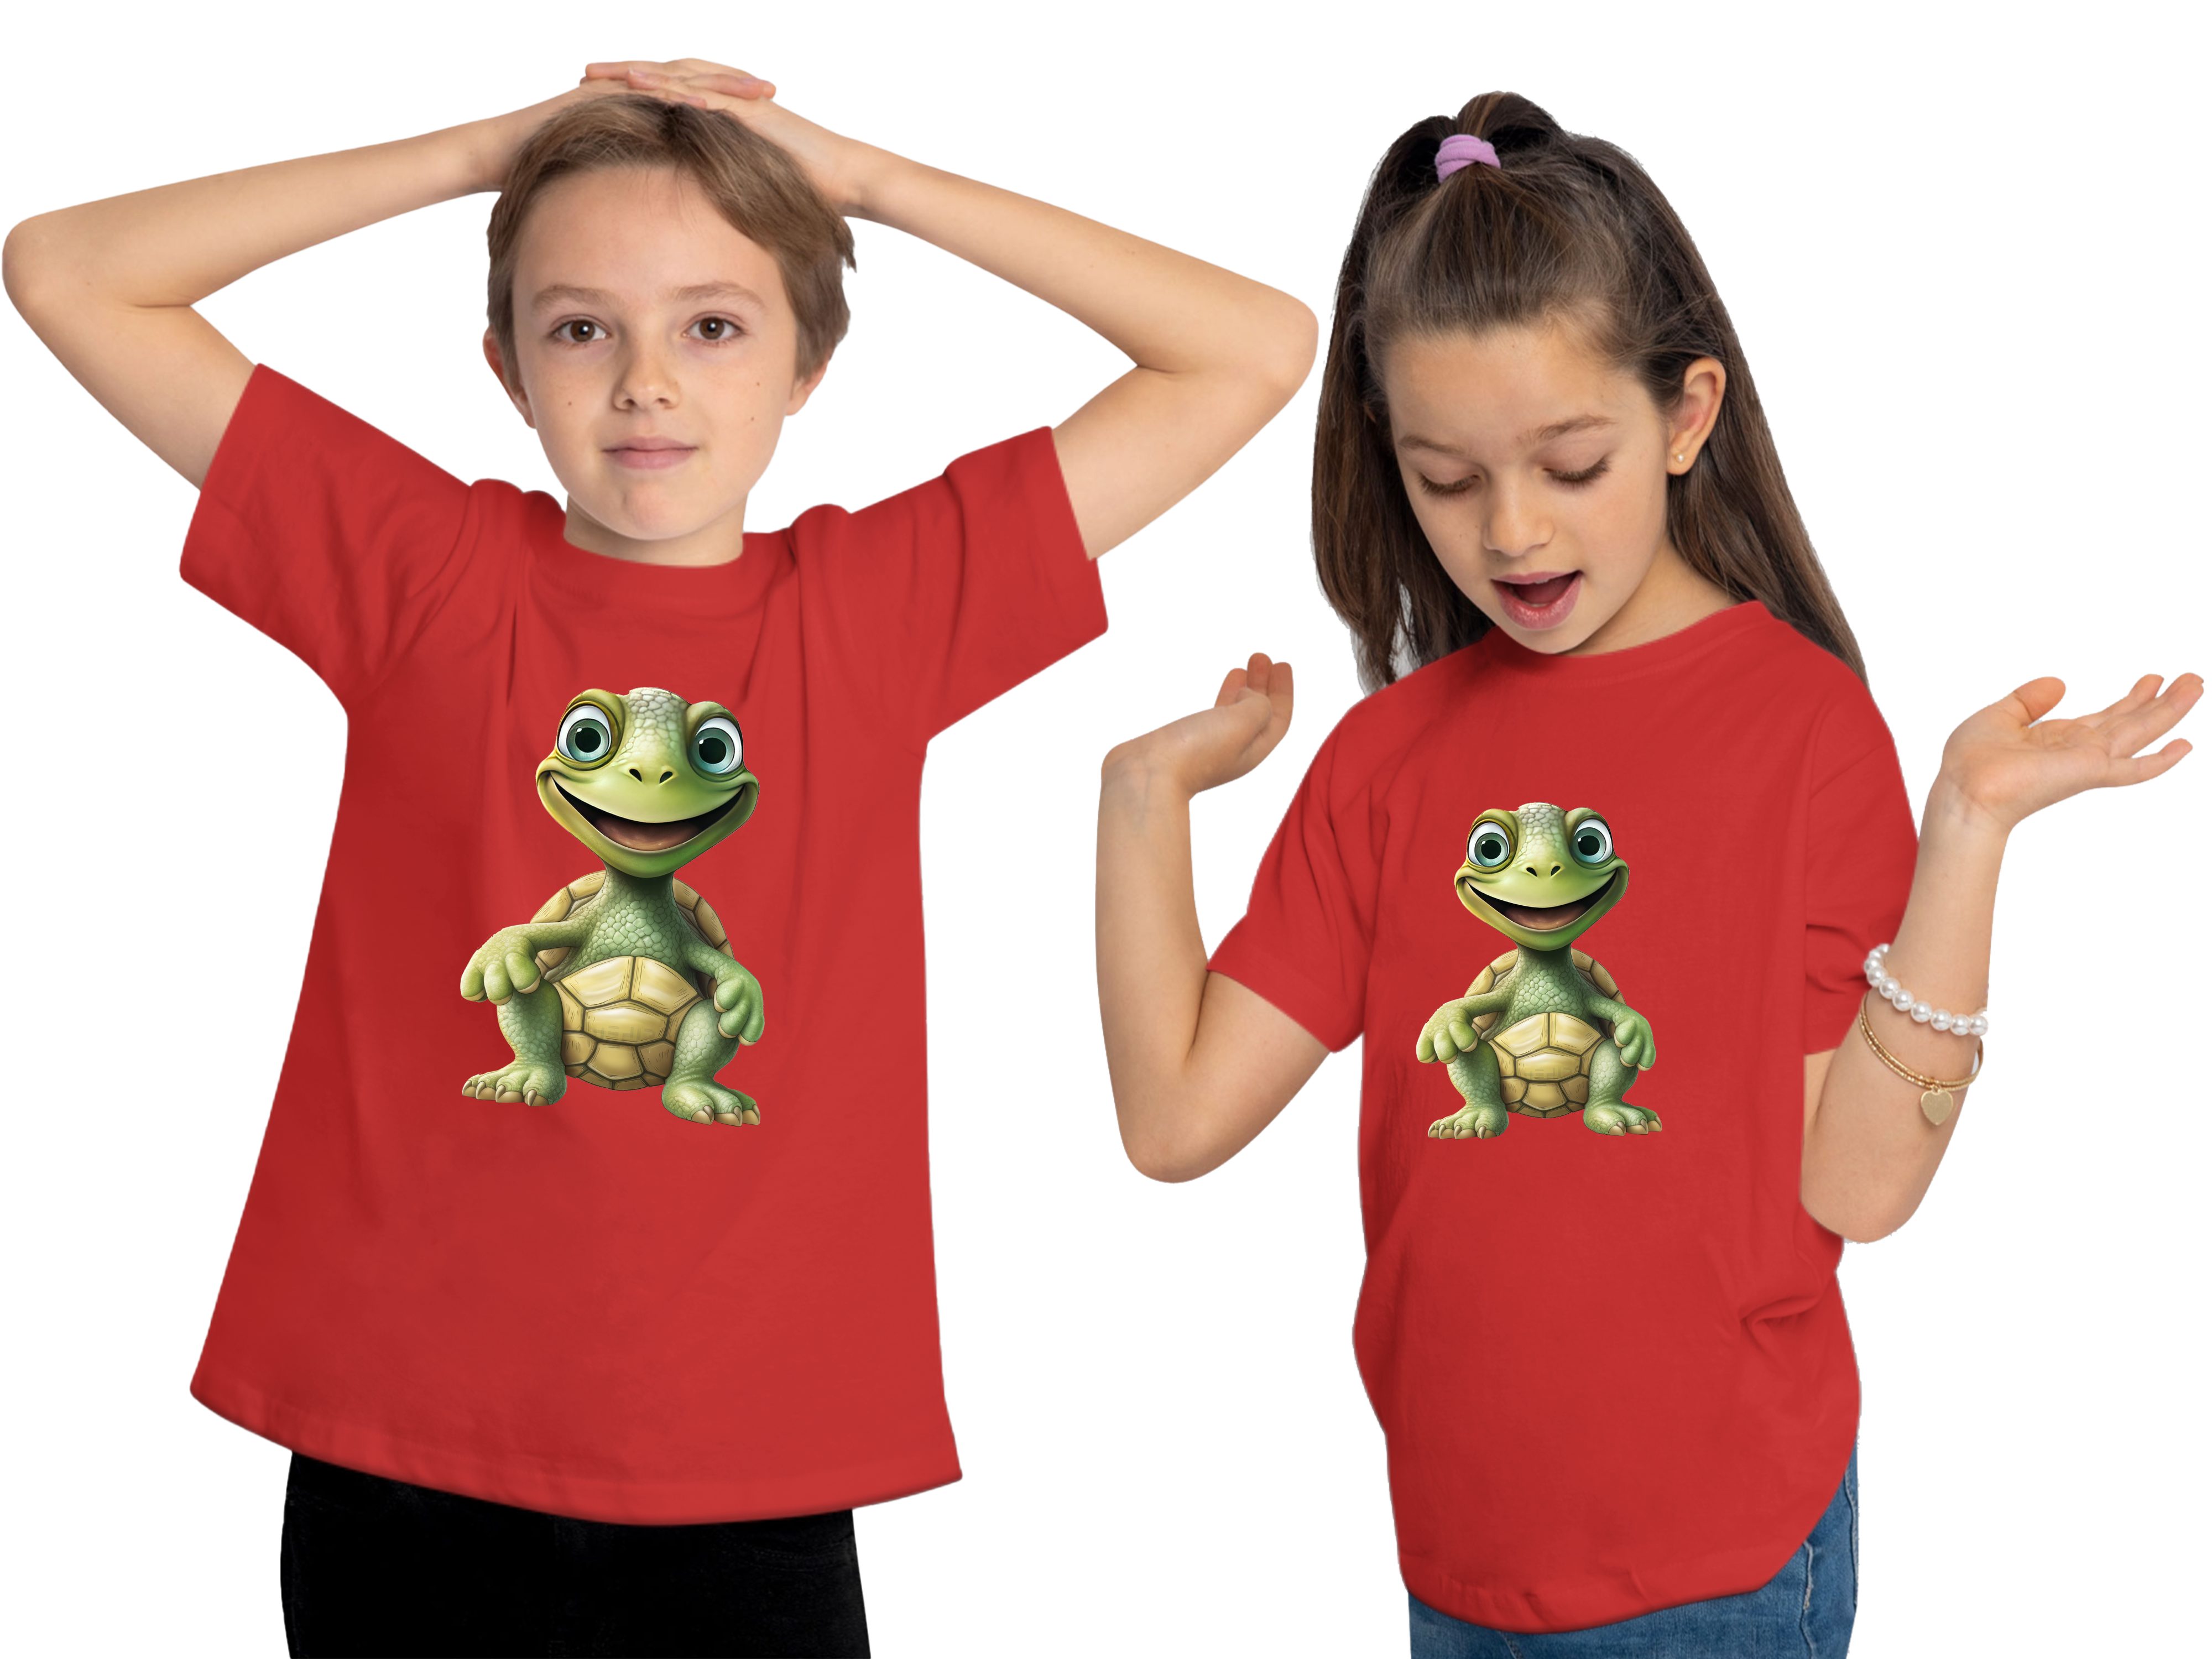 T-Shirt Wildtier Aufdruck, Baumwollshirt rot Baby i279 Kinder MyDesign24 bedruckt Schildkröte mit Print Shirt -